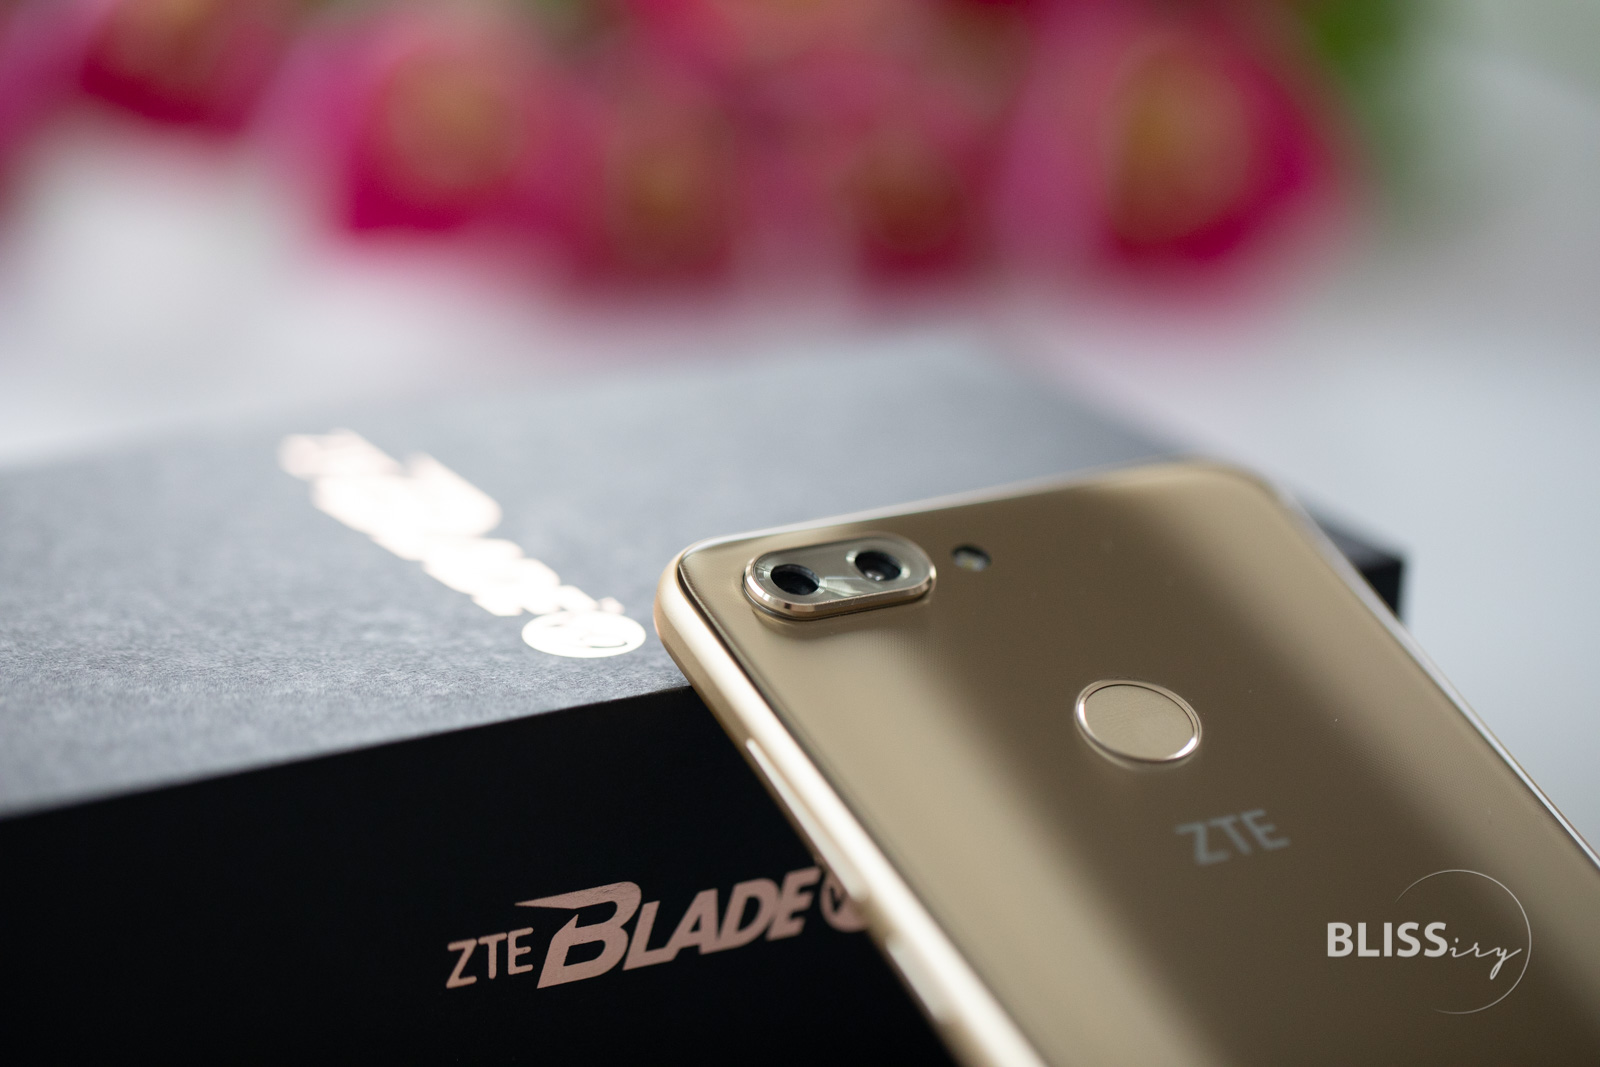 ZTE Blade V9 - Smartphone im Test - Bewertung und Erfahrung Mittelklasse Smartphone von ZTE - MWC 2018 - Mobile World Congress Barcelona - Technikblog - Smartphoneblog